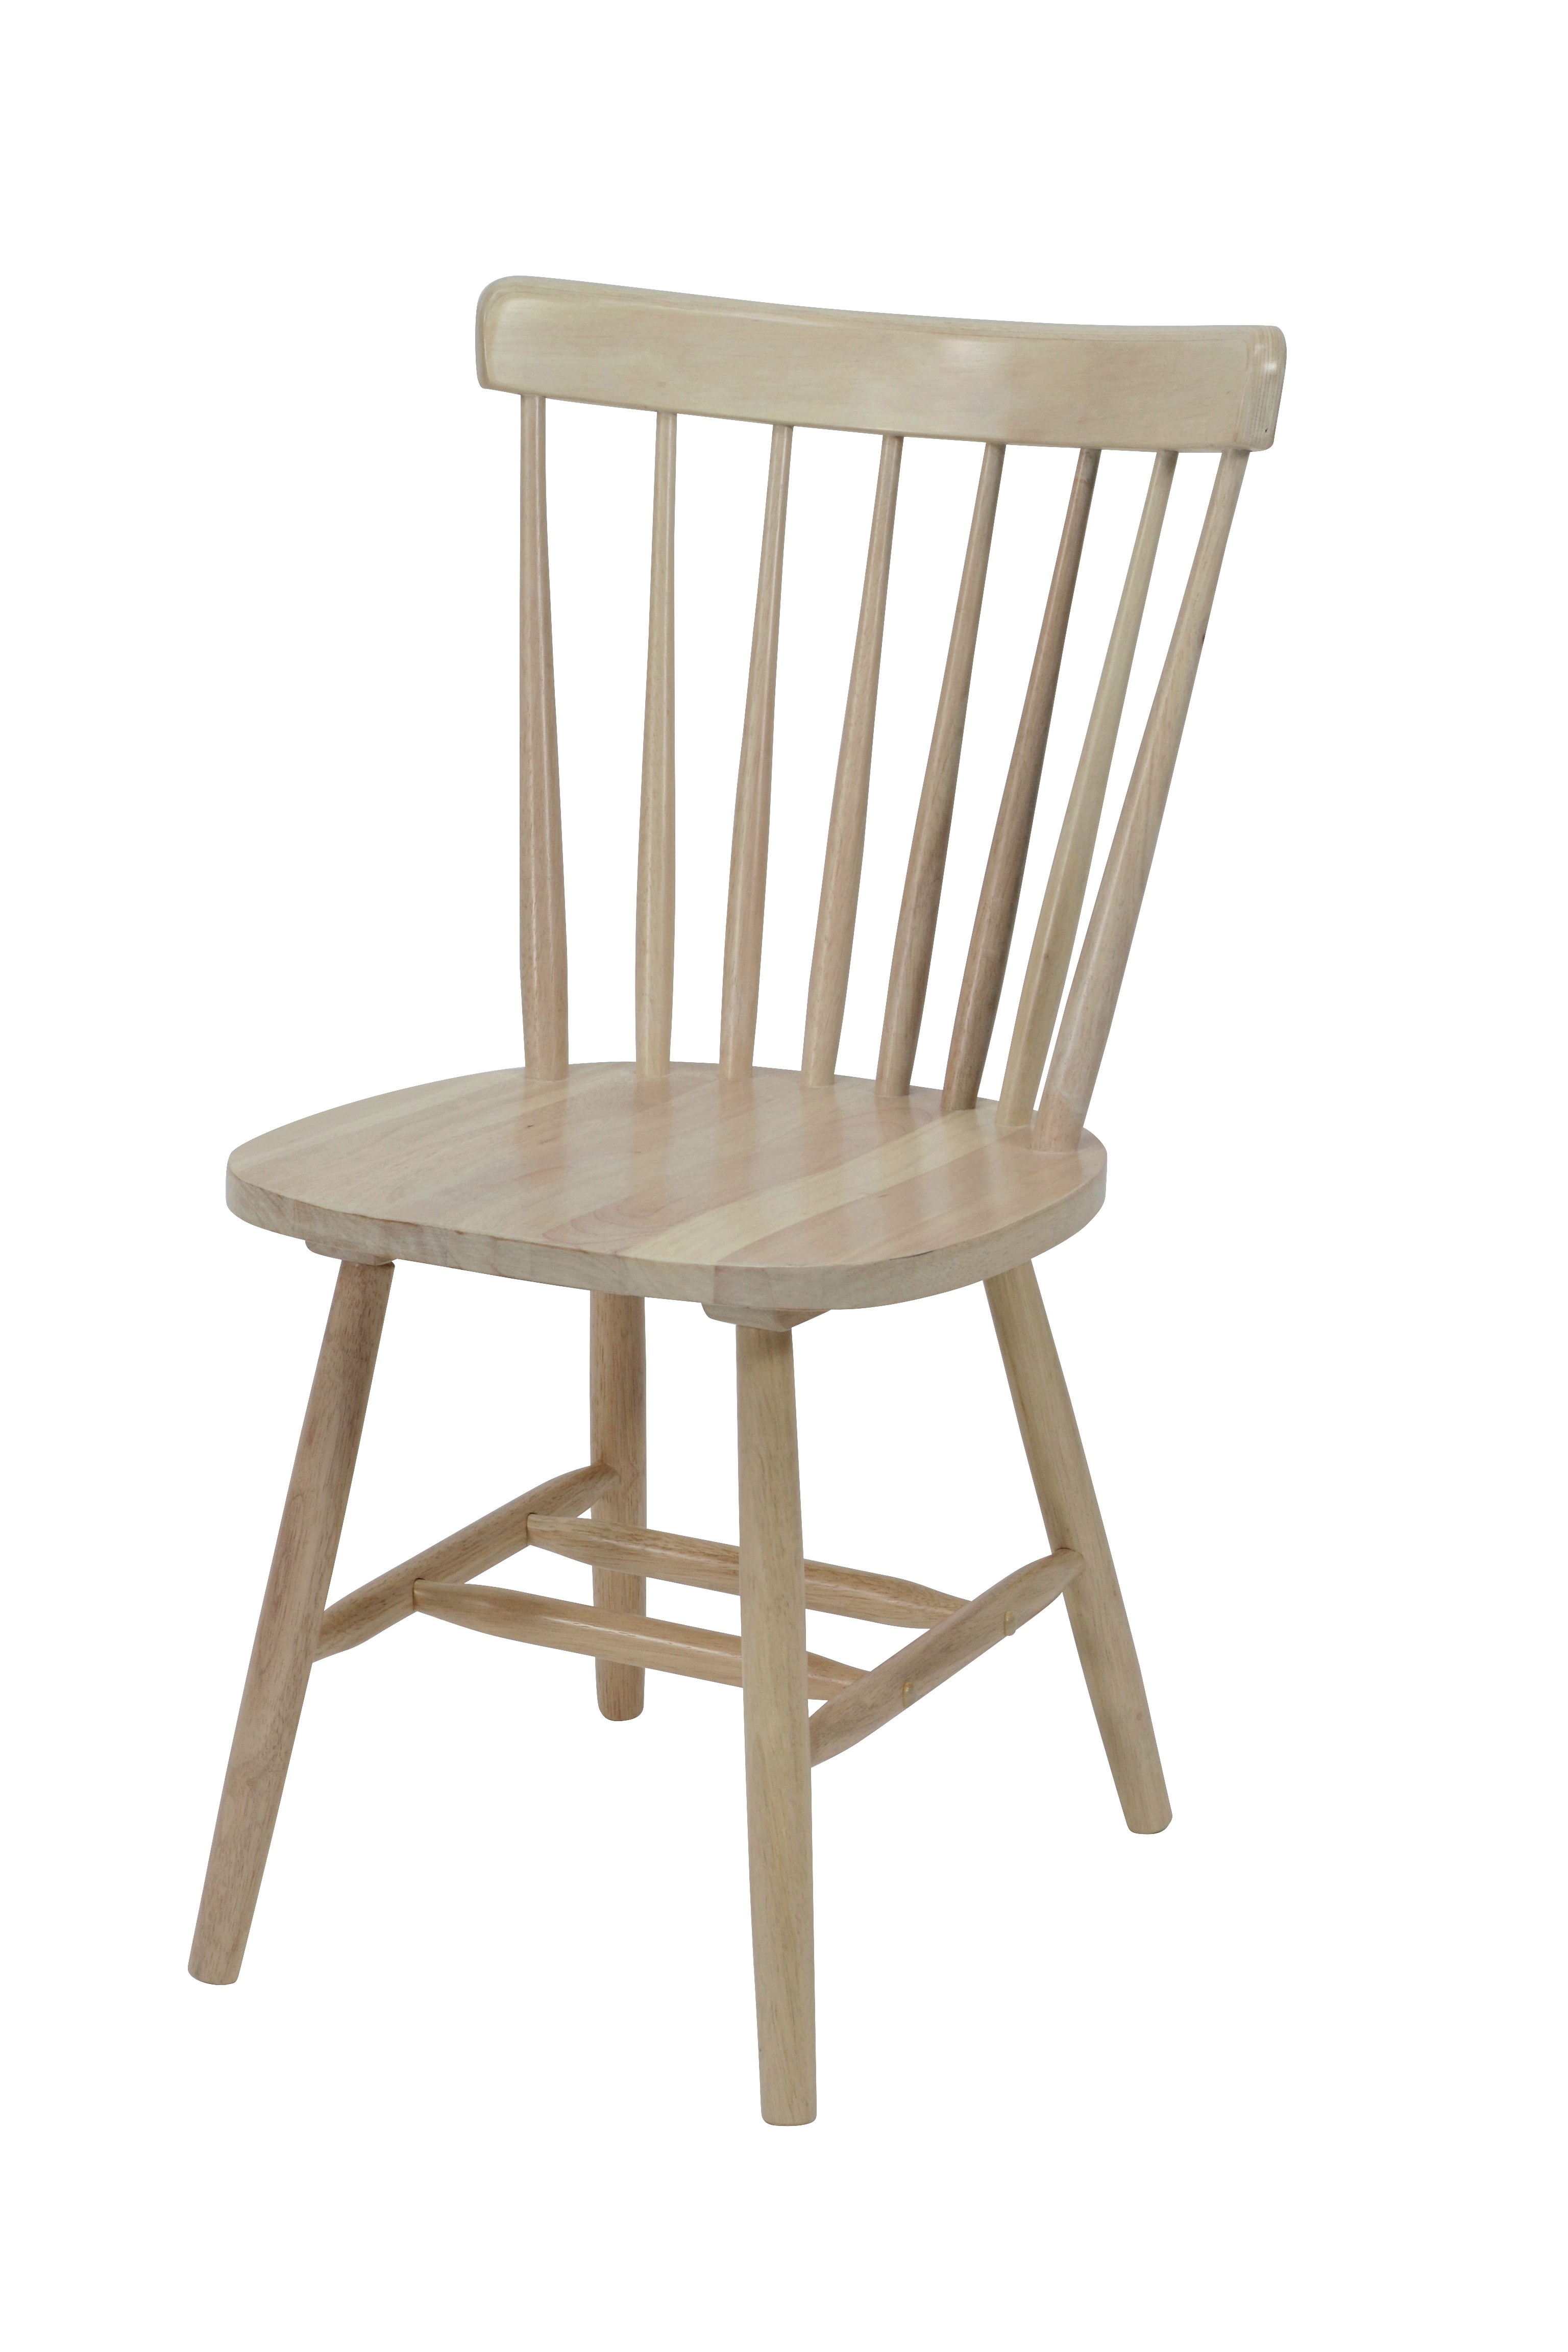 Levně Estila Designová dřevěná jídelní židle Felicita ve světle hnědé barvě 89cm